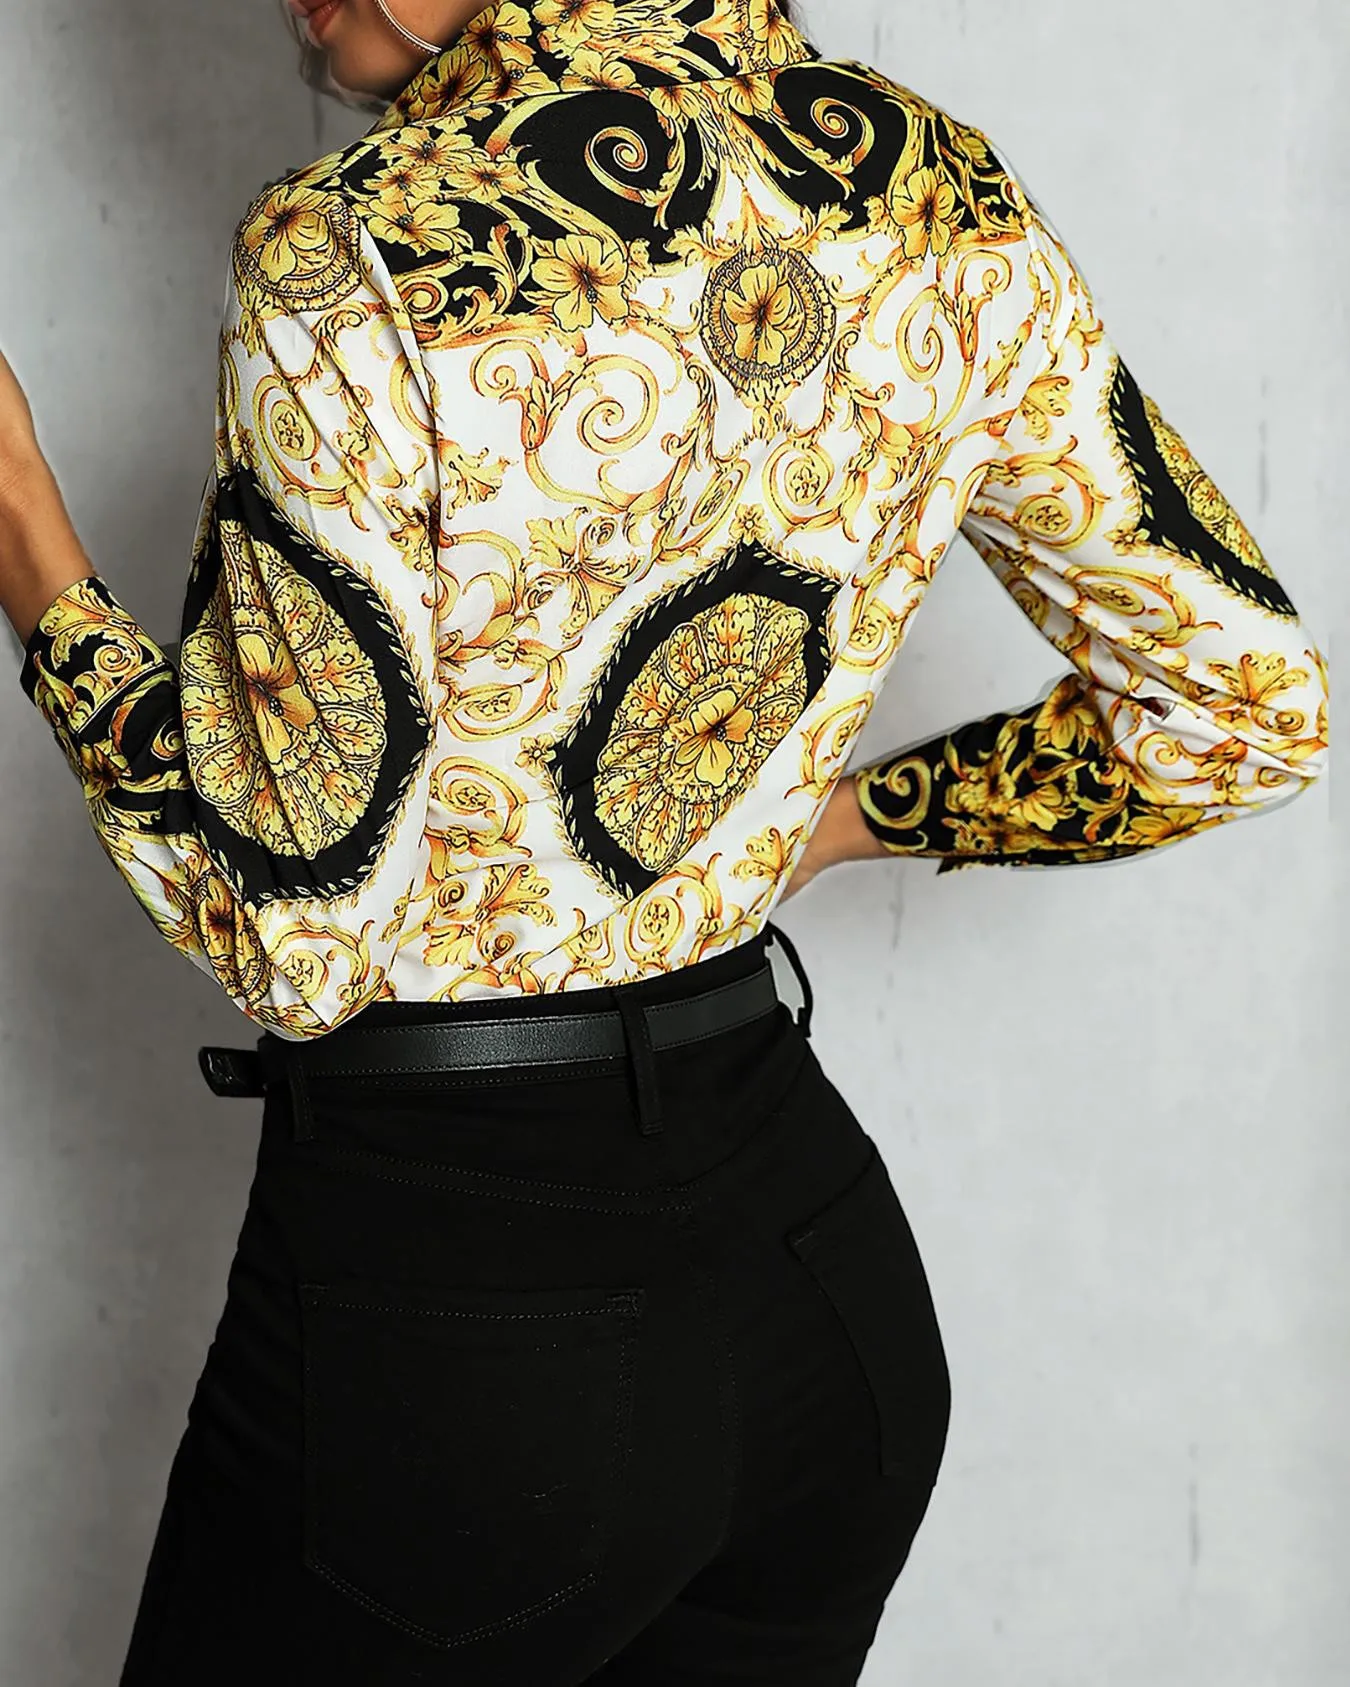 Дворец цветочный смешанный принт Женская Повседневная рубашка с длинным рукавом женская элегантная рабочая одежда блузка Рубашки женские короткие топы уличная одежда